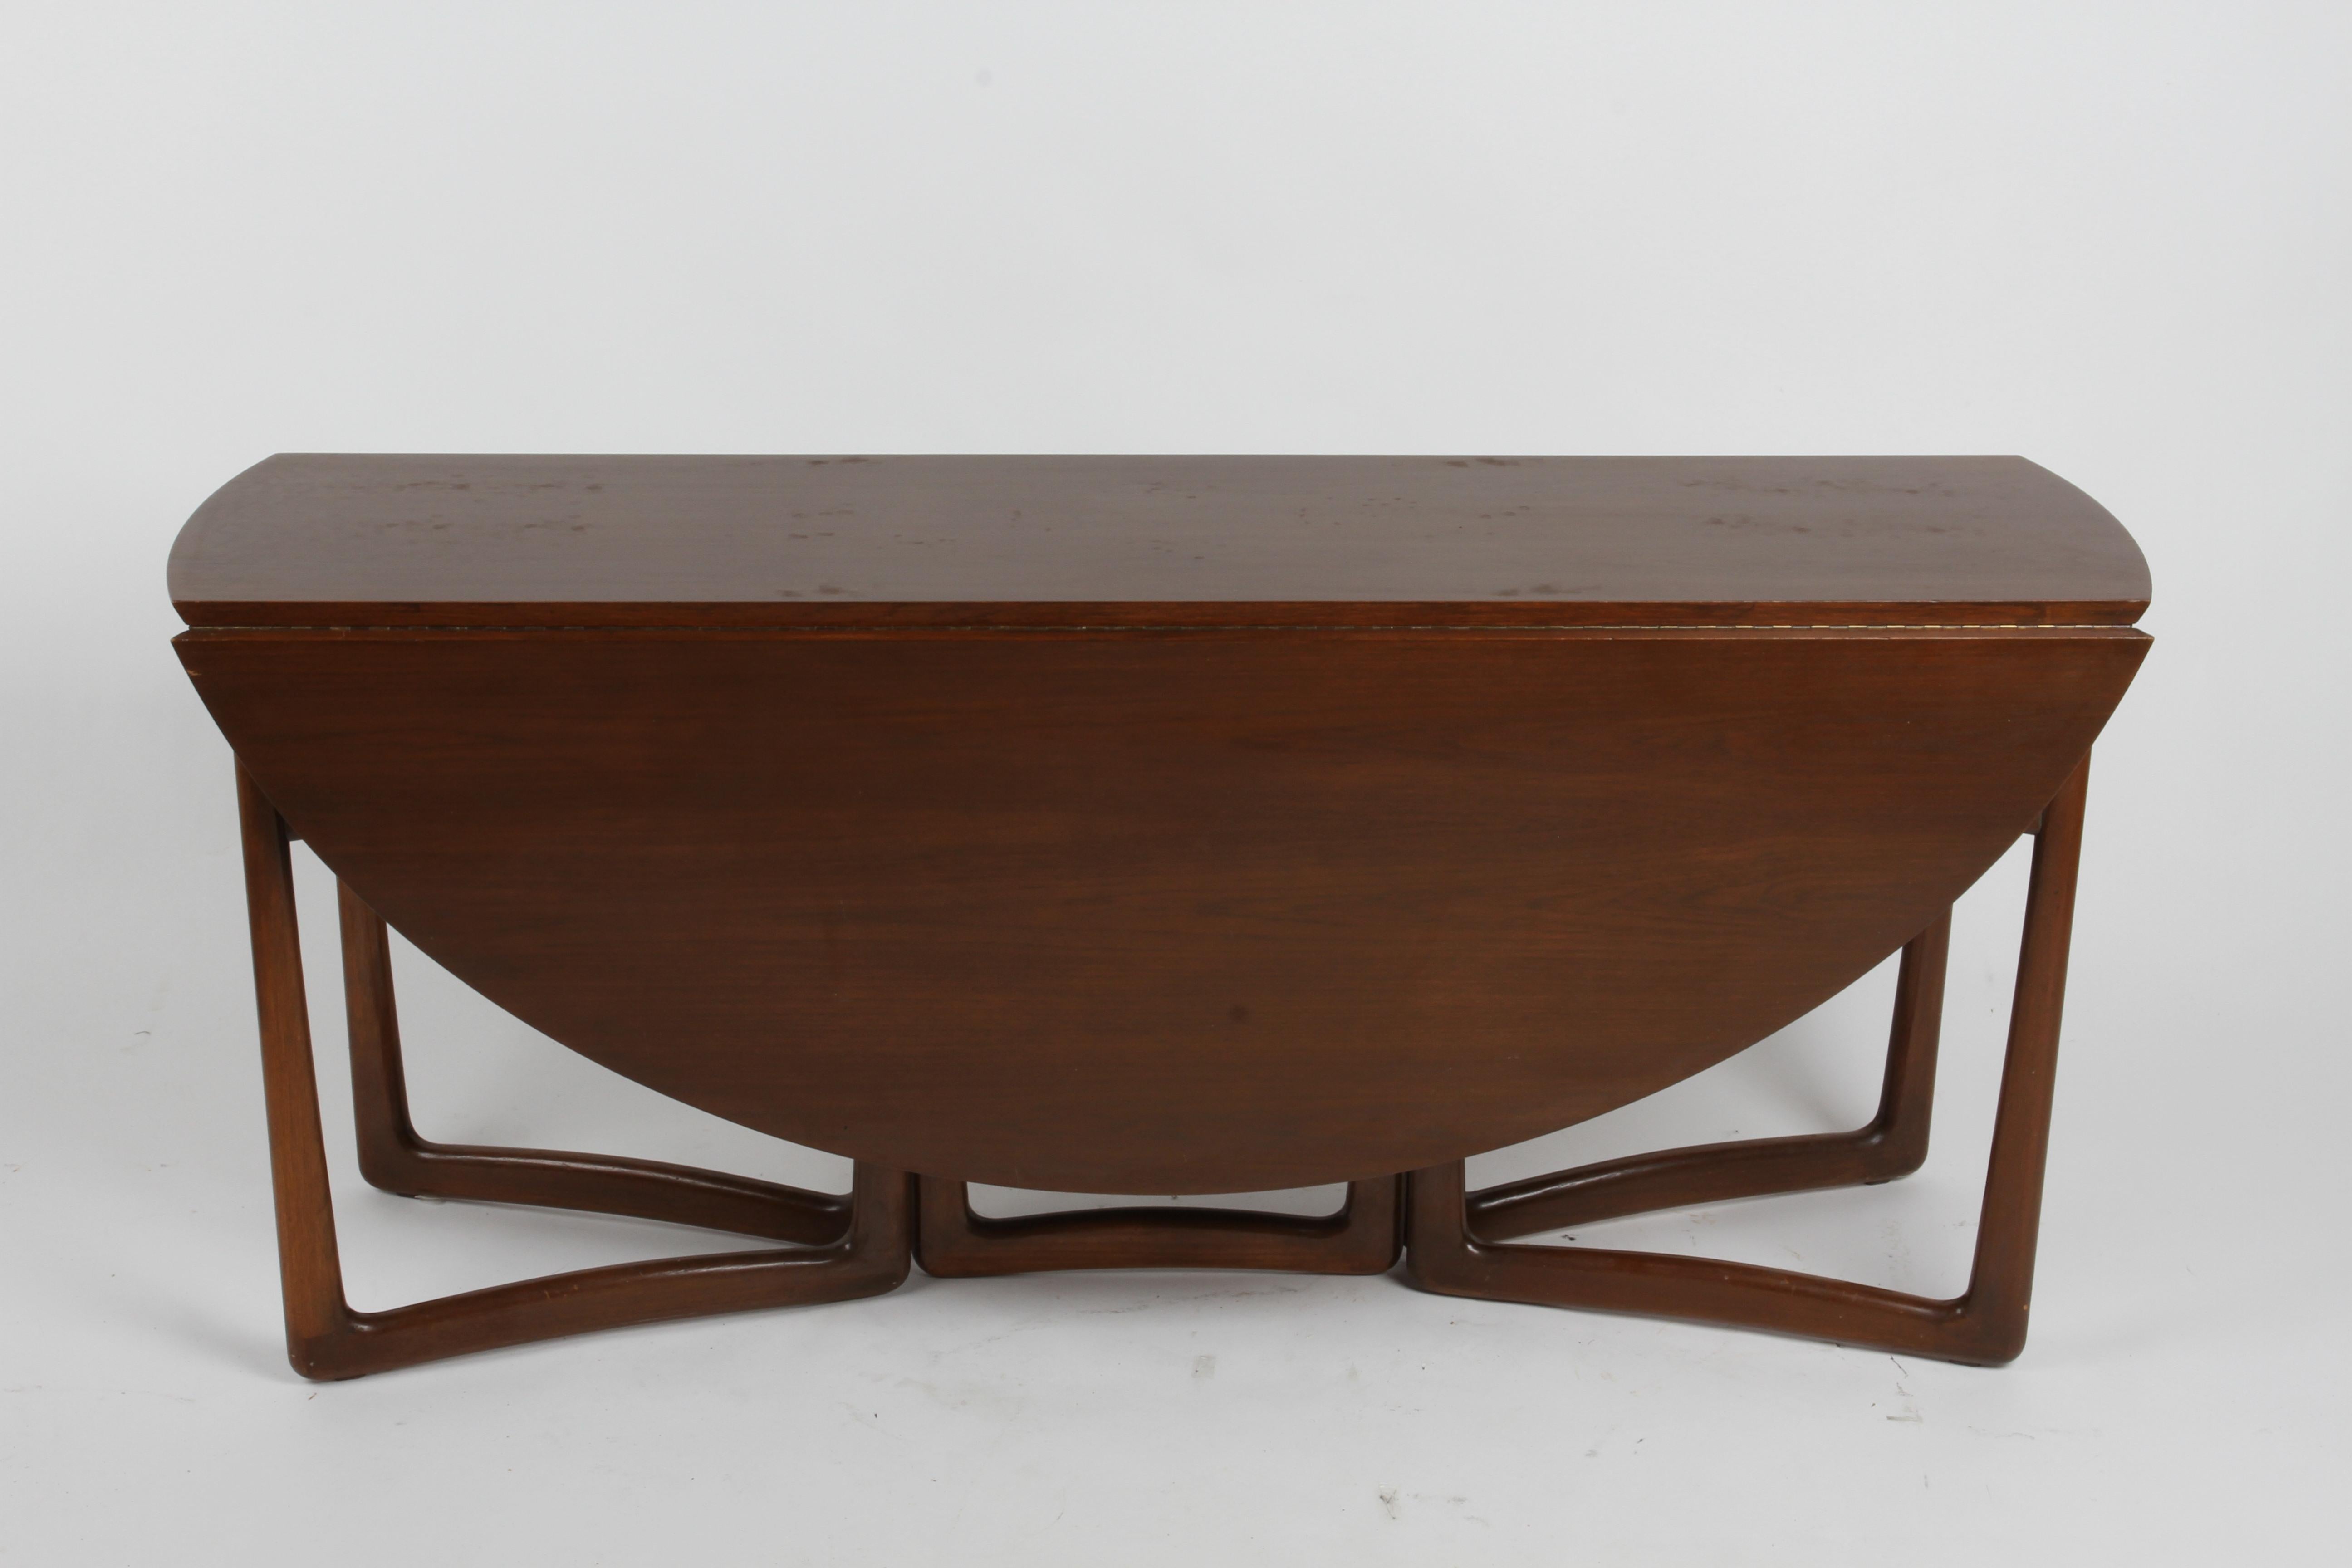 Schöner Teakholz-Klapptisch aus den 1960er Jahren, entworfen von Peter Hvidt und Orla Mølgaard Nielsen für France & Sons und importiert von John Stuart Inc. Die skulpturalen Beine dieses umwandelbaren Tisches lassen sich leicht öffnen, um die beiden